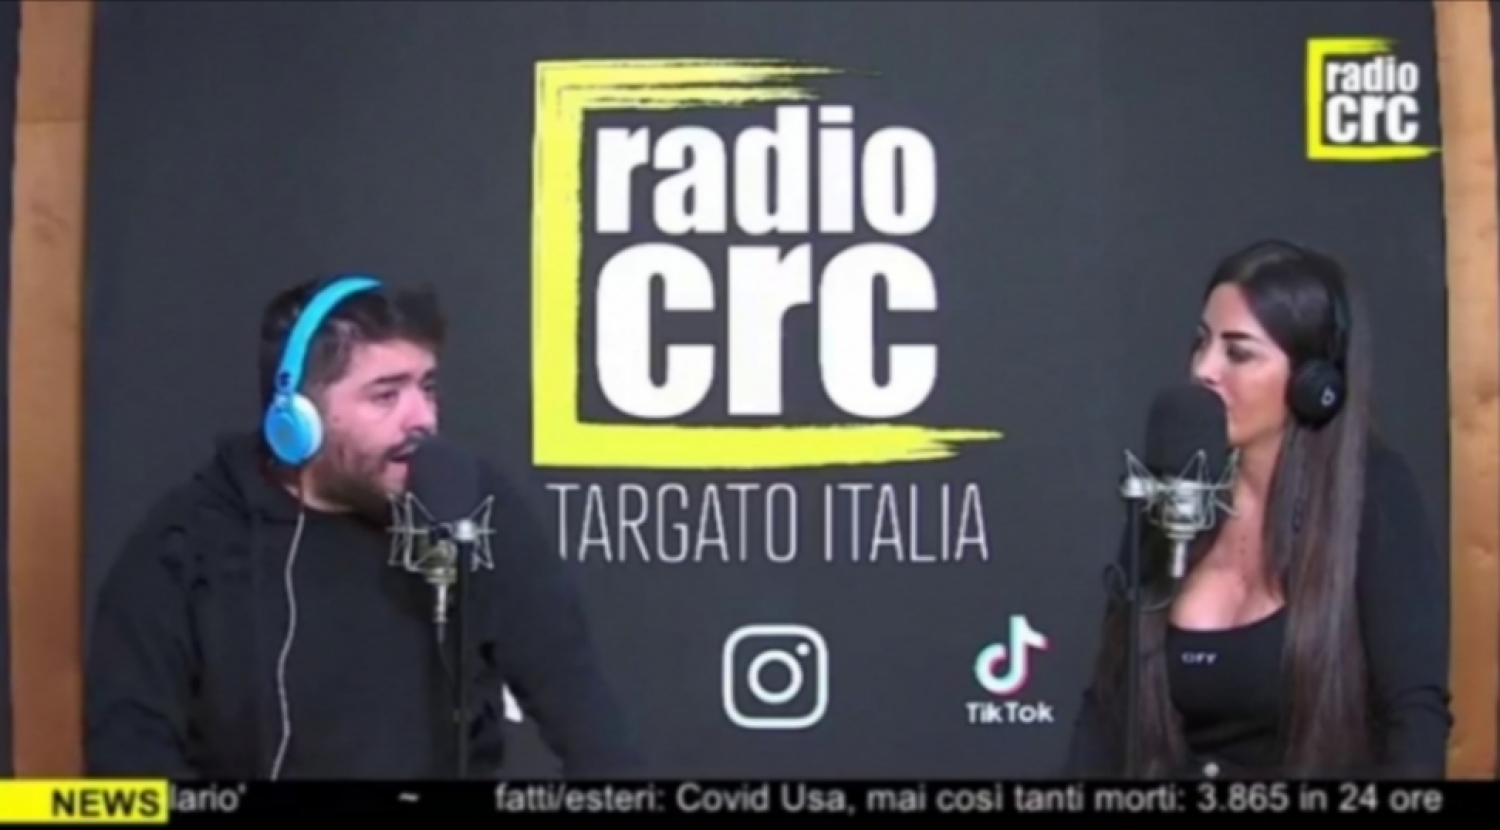 Carnevale a Radio Crc: “Il Napoli ha sofferto l'assenza di Mertens. Llorente ripercorrerà le mie orme all’Udinese”